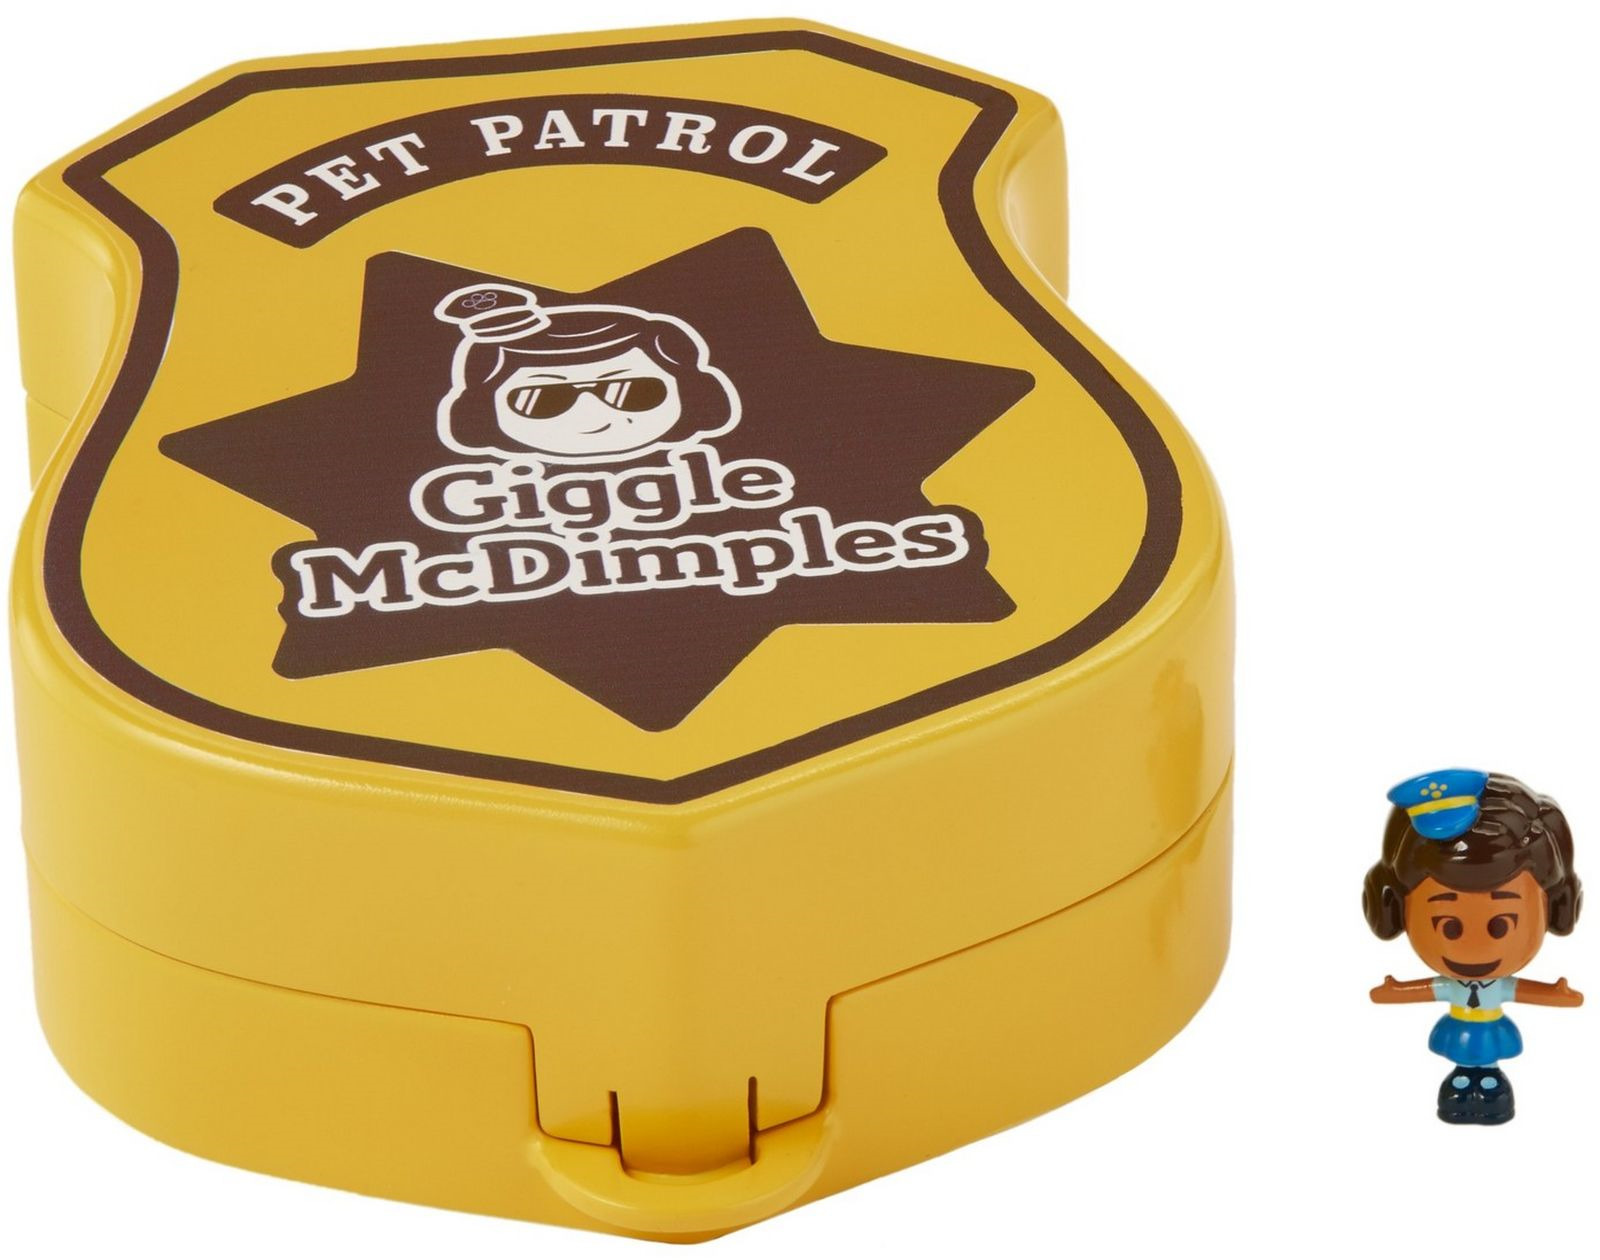 фото Сюжетно-ролевая игрушка Toy Story 4 Pet Patrol Бесхитростный значок, с мини-фигуркой Гиггл МакДимплес, GGX49